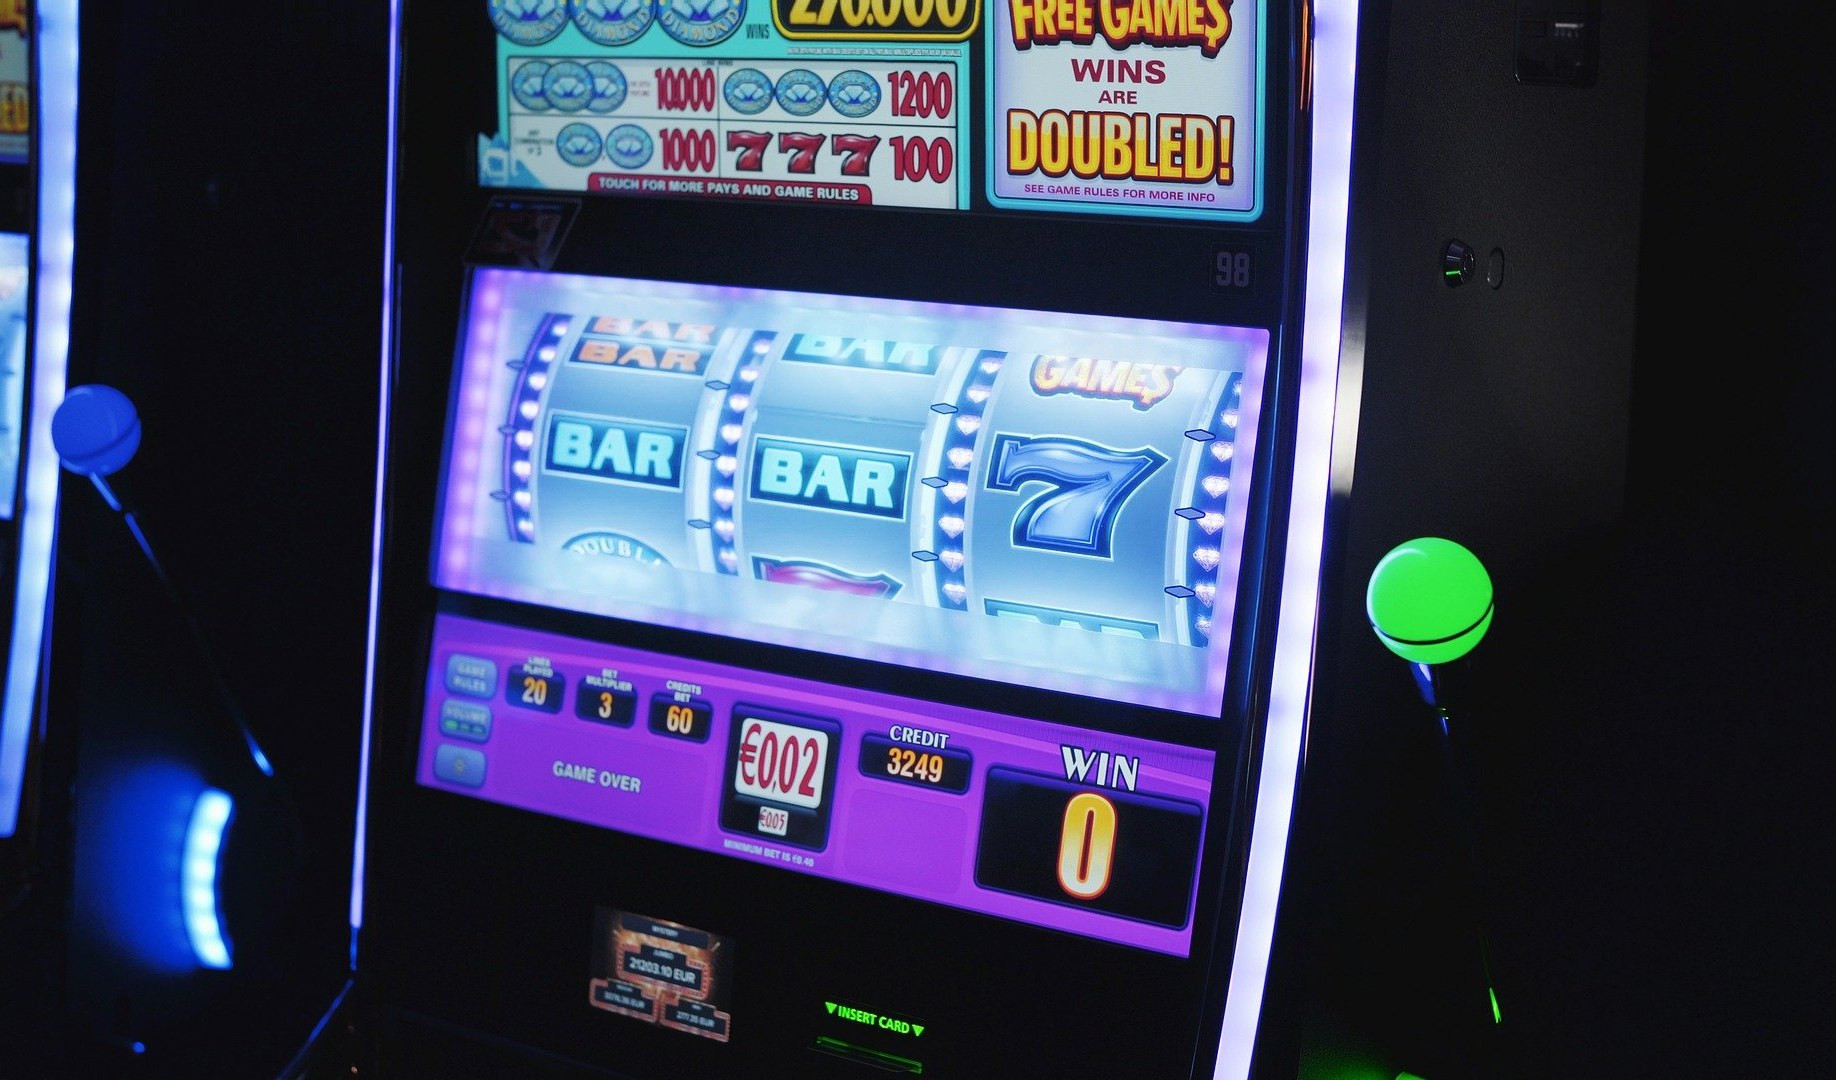 Gioco d'azzardo, a Genova una slot machine ogni 150 cittadini: 